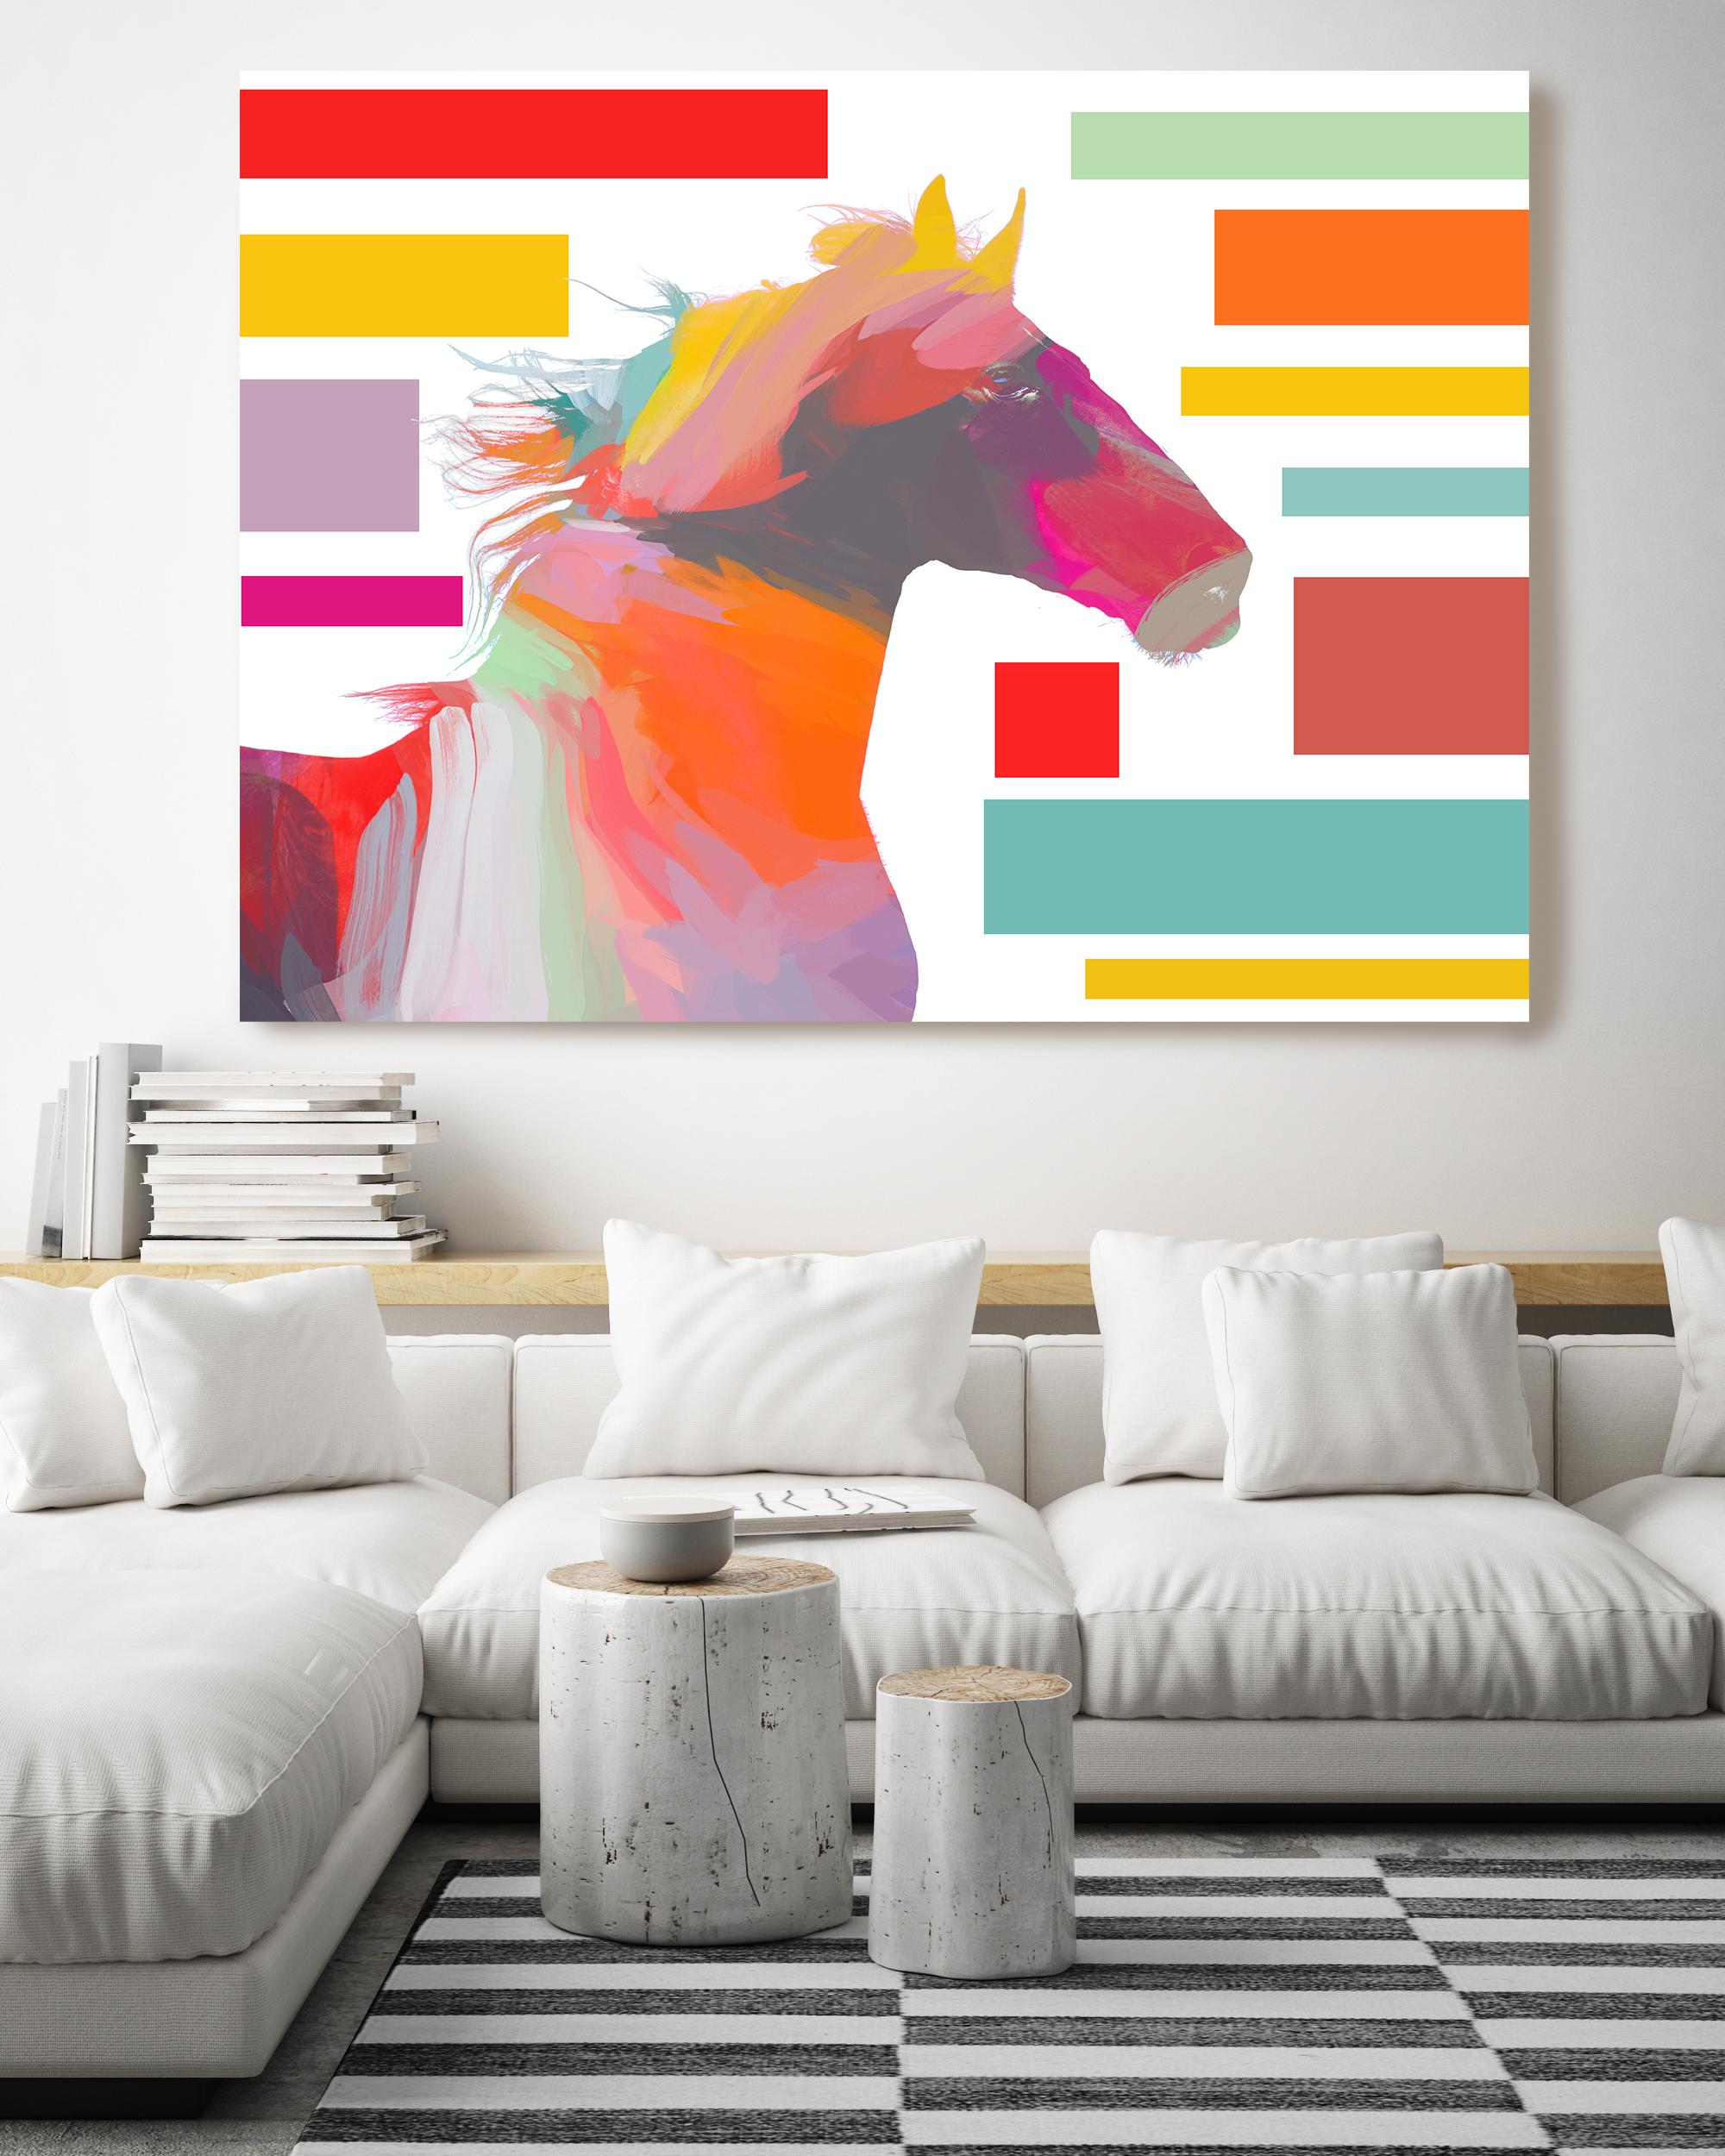 Horse Block Painting Art Mixed Media on Canvas 40x60"  - Mixed Media Art by Irena Orlov